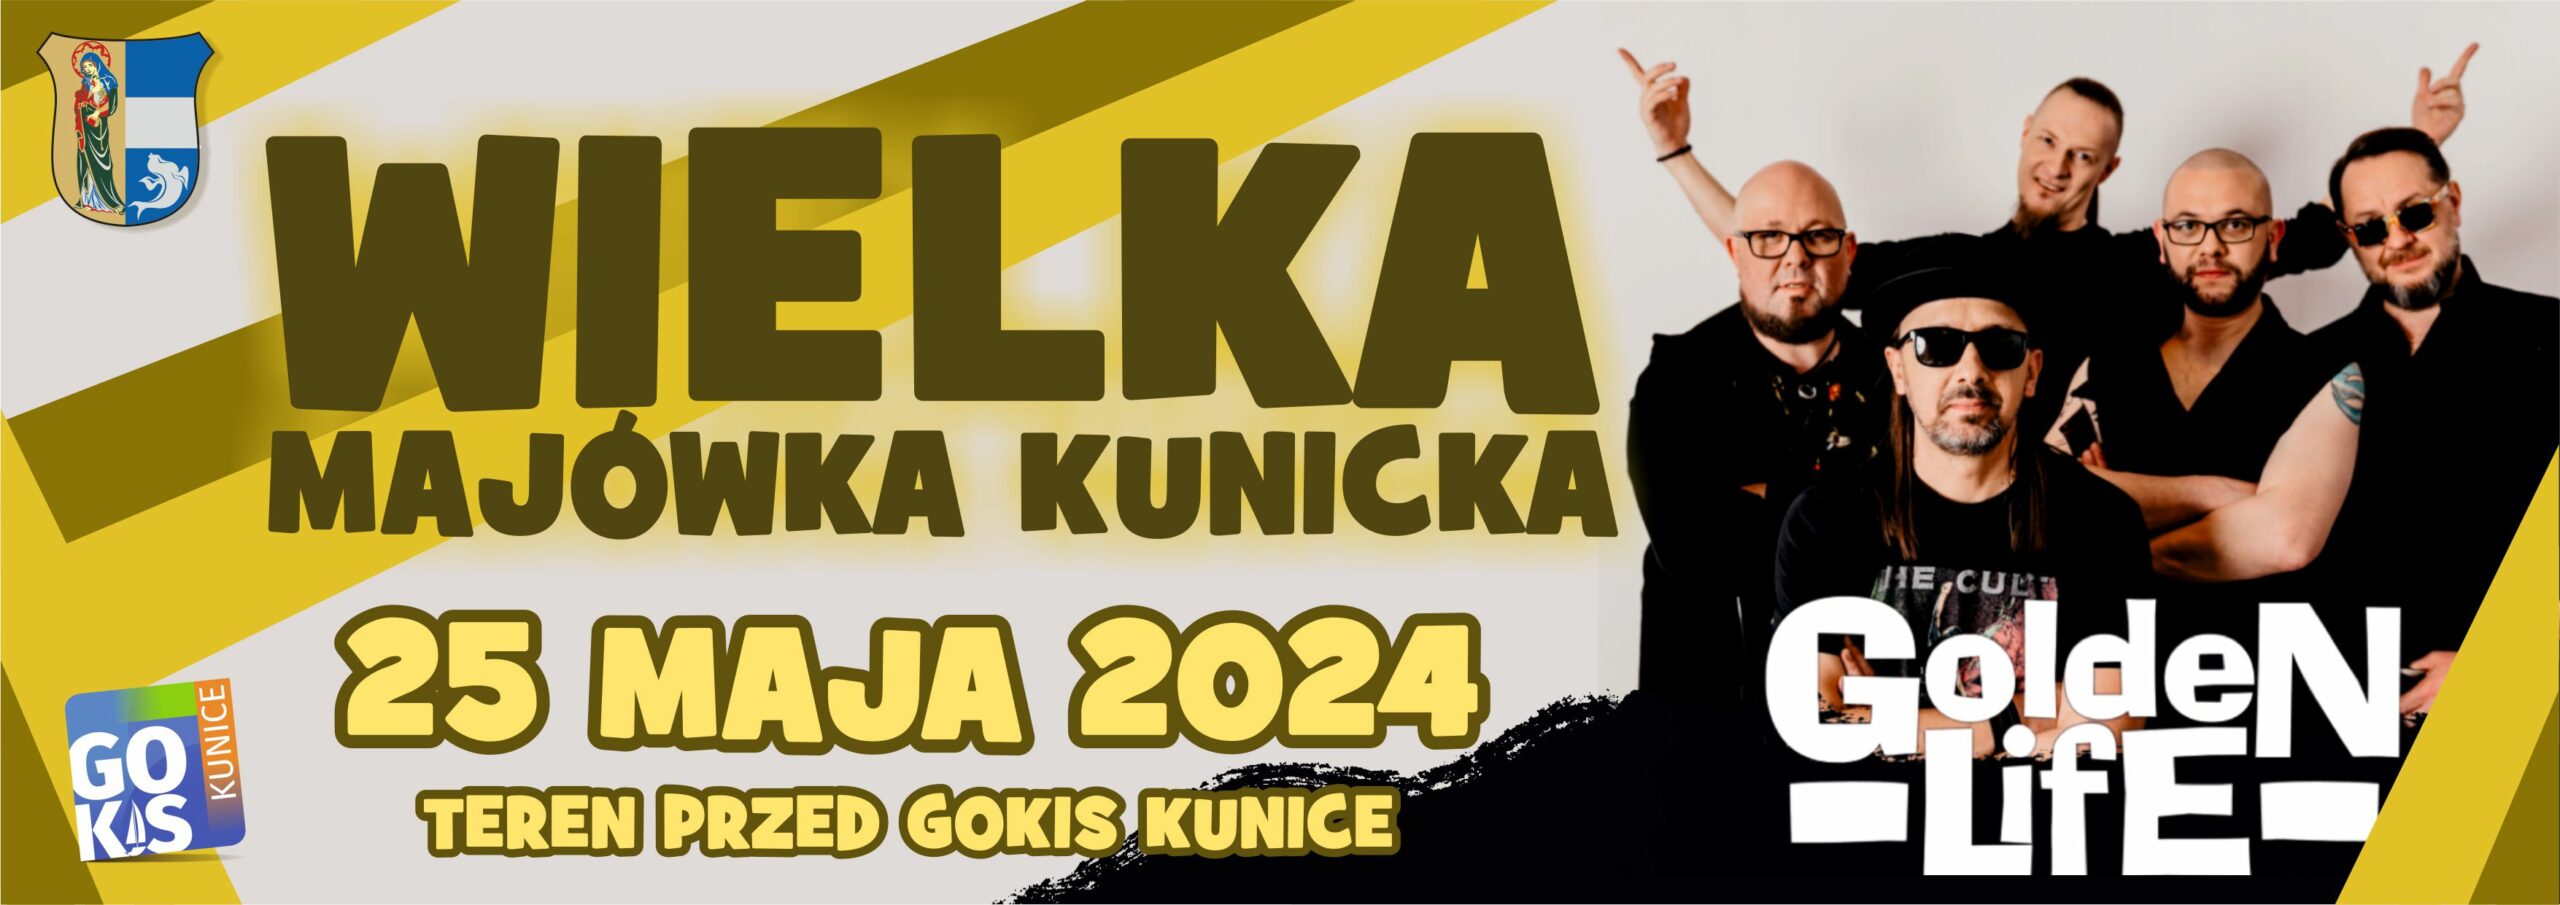 https://www.gokis-kunice.pl/imprezy/majowka-kunicka/